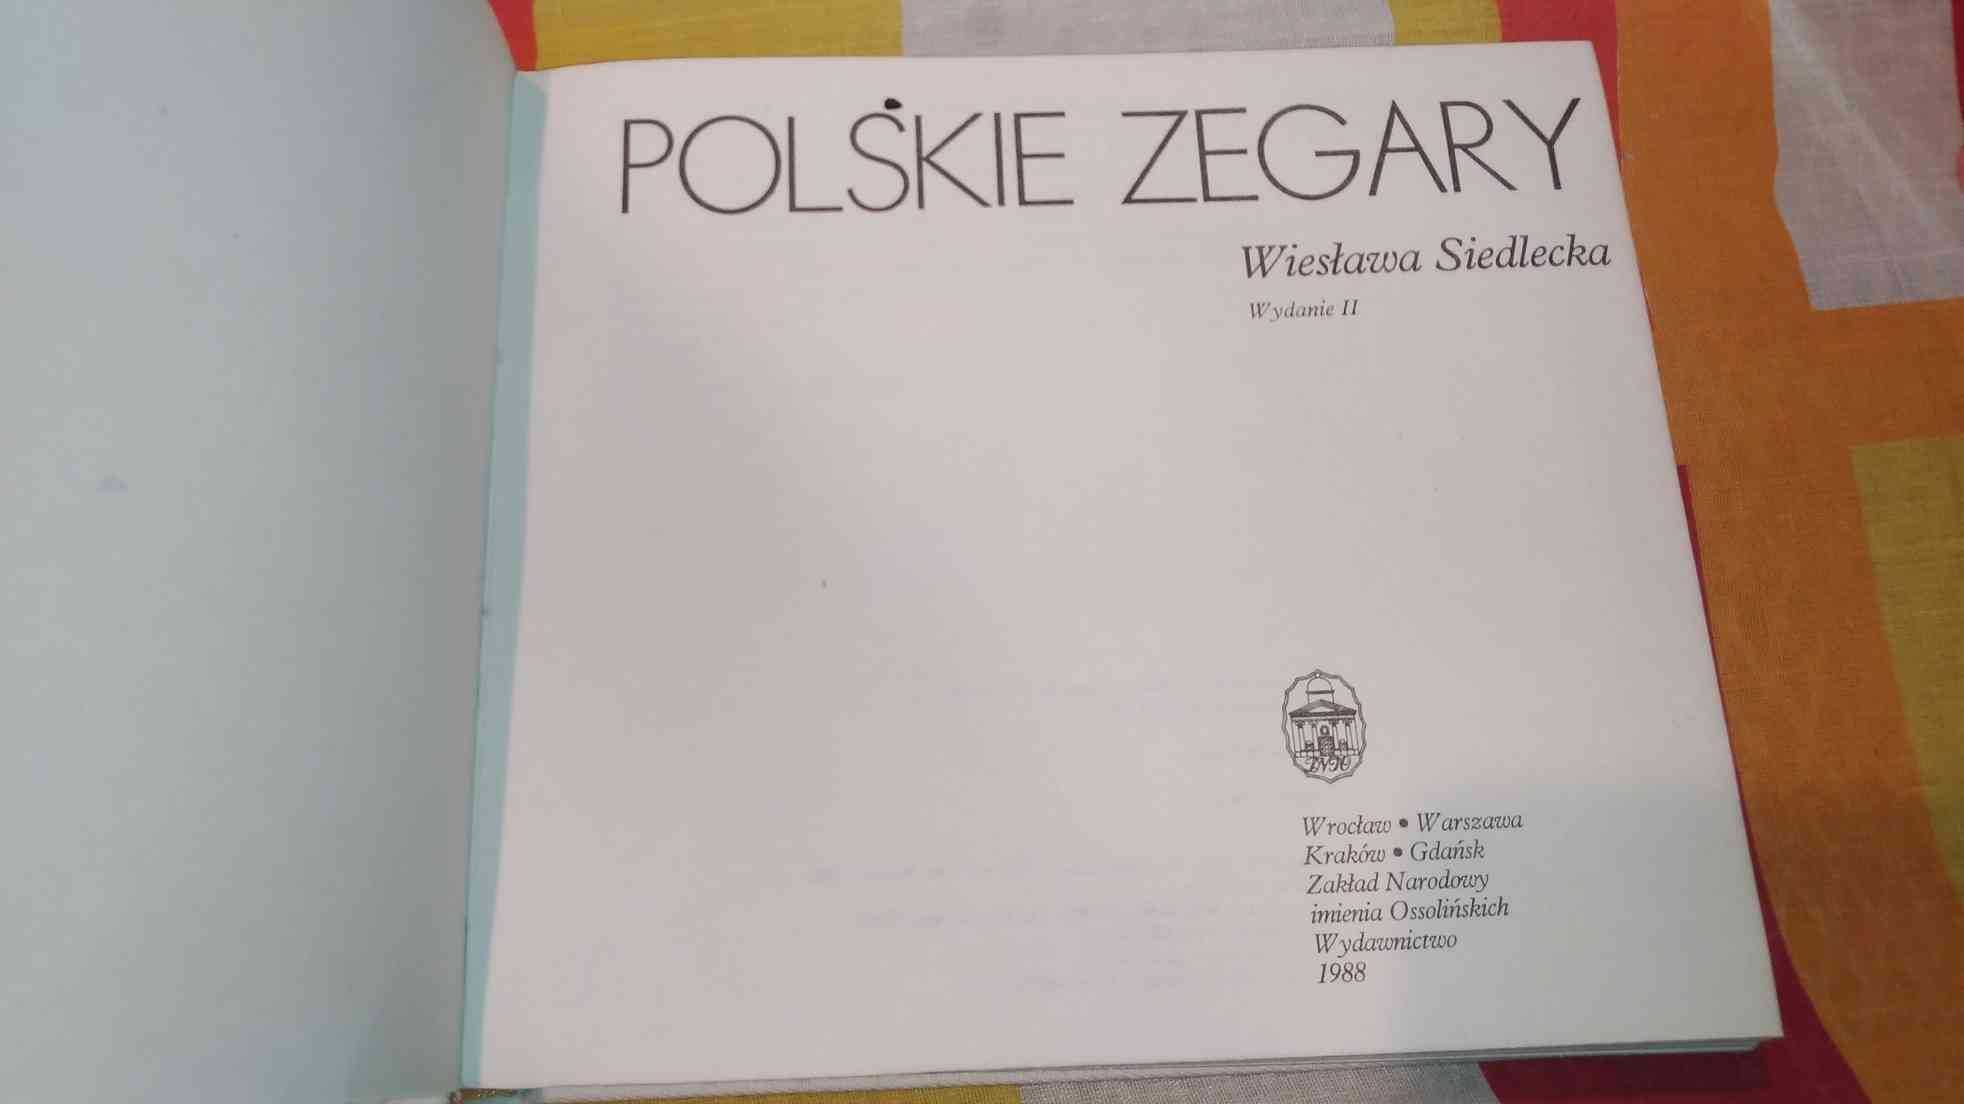 Polskie Zegary
Wiesława Siedlecka
Ossolineum